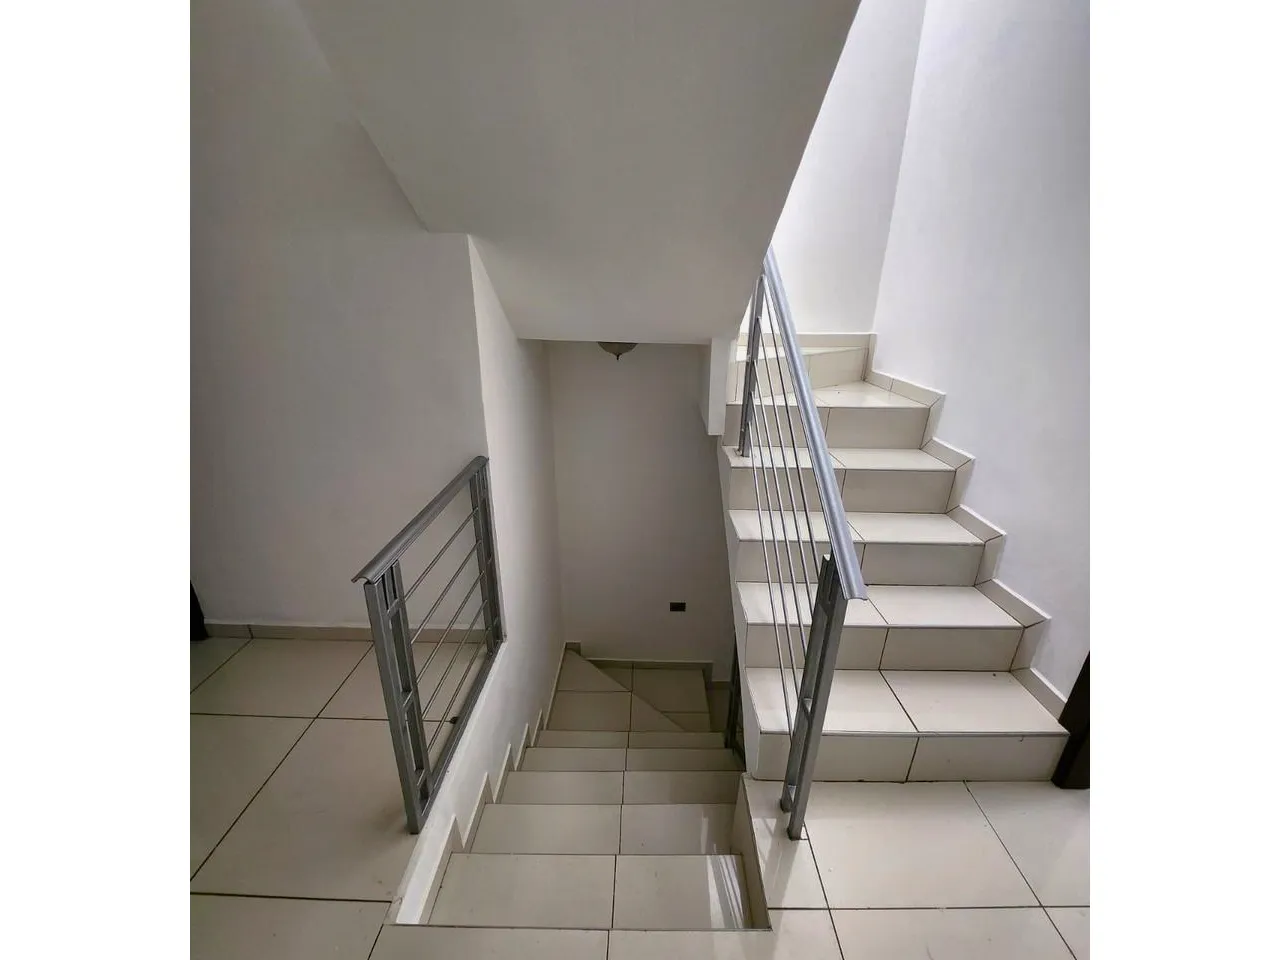 Escaleras que dan aceso al segundo nivel de la casa, cuenan con paredes de color blanco, suelo de porcelanato y los barandales son metalicos de color gris.